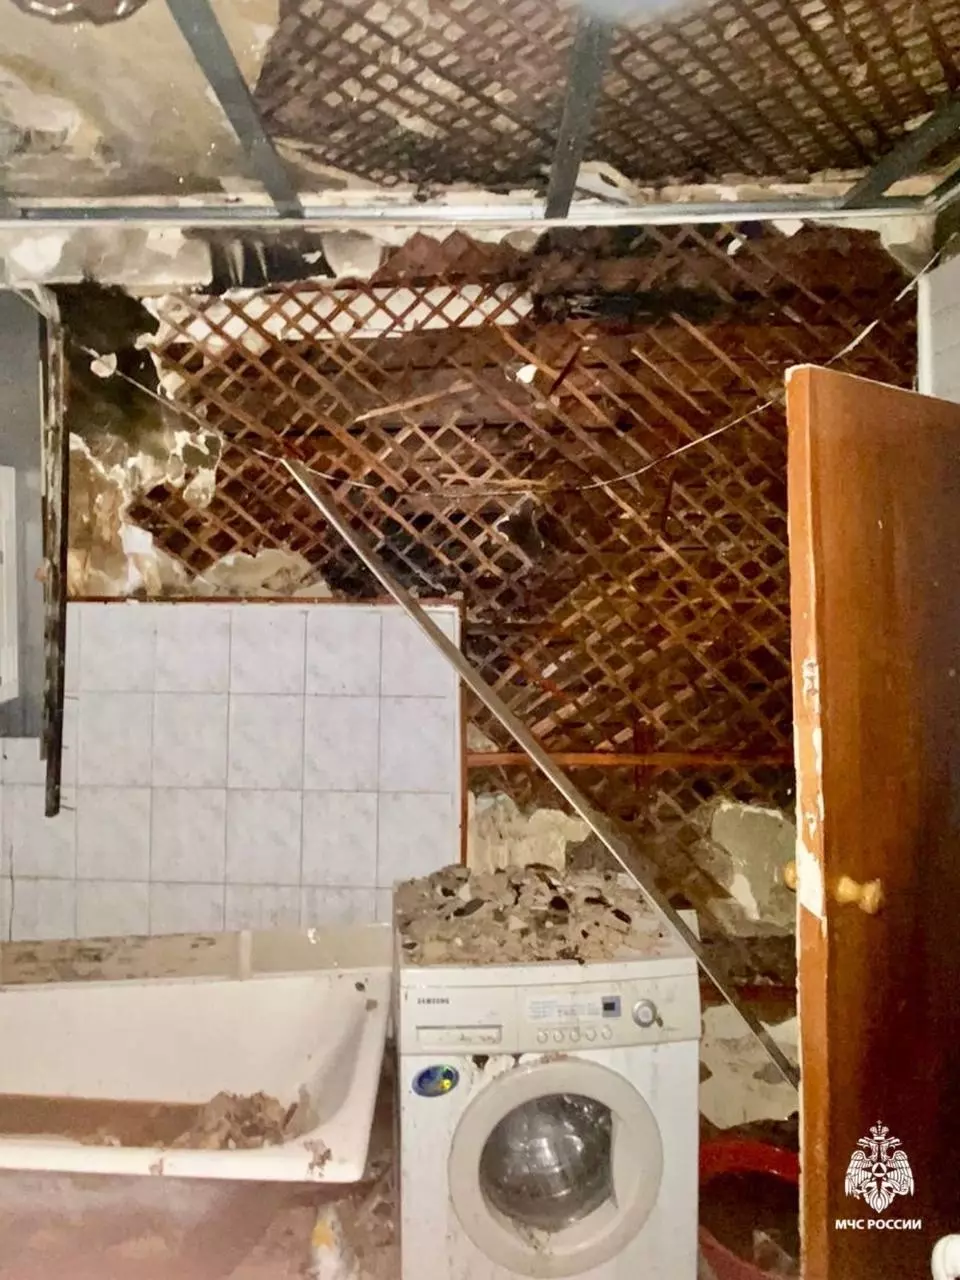 Пьяный мужчина устроил пожар и едва не сгорел в своей квартире в Ставрополе2